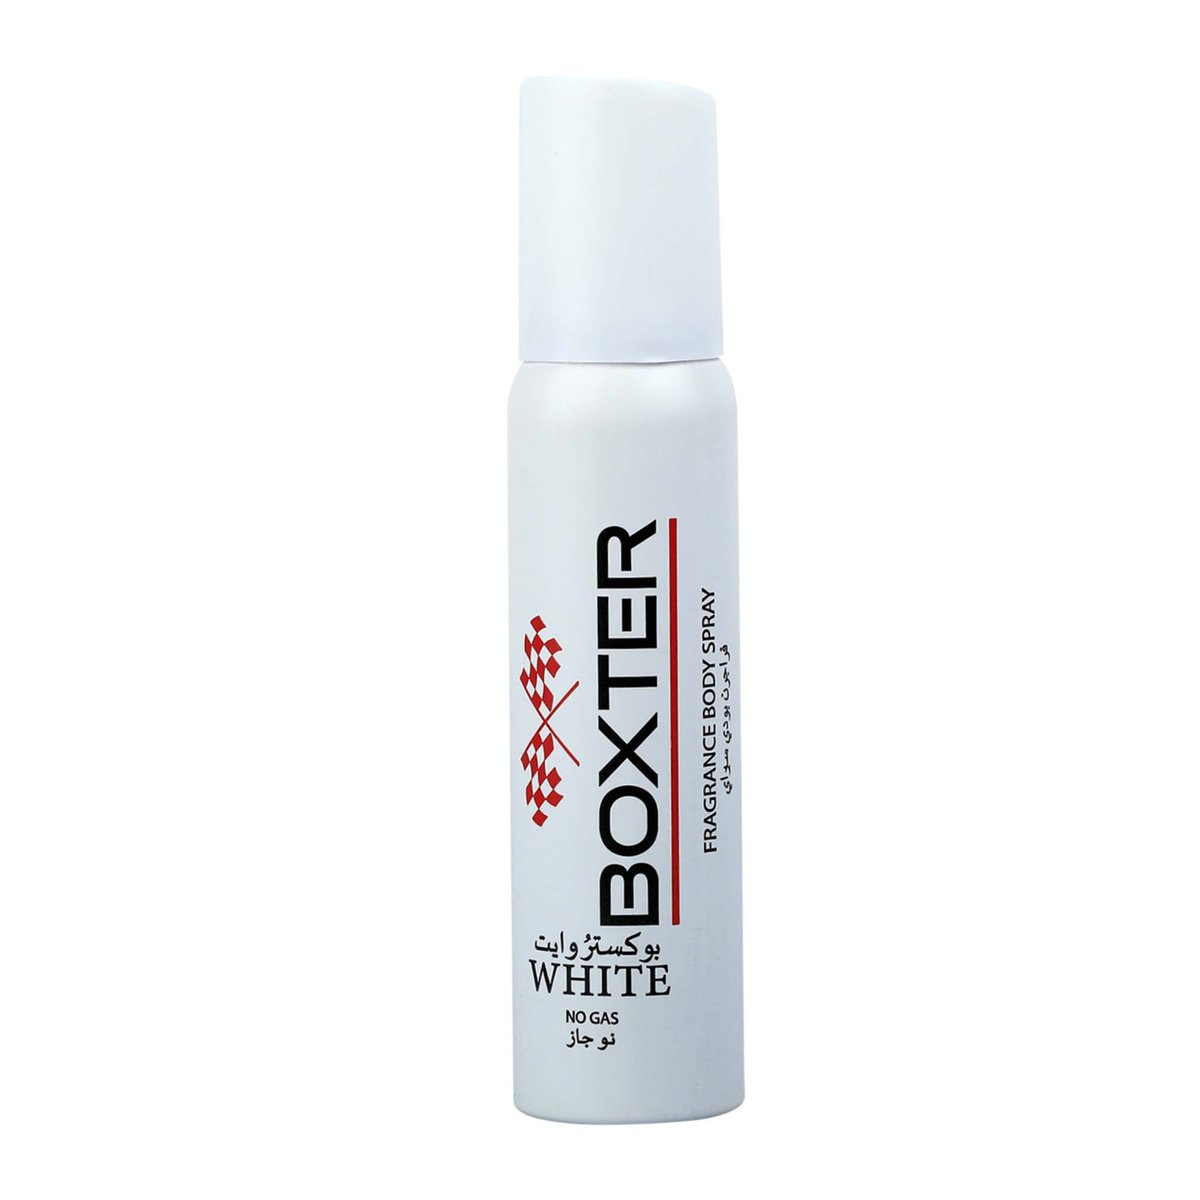 Boxter Fragrance Body Spray White For Men 120ml